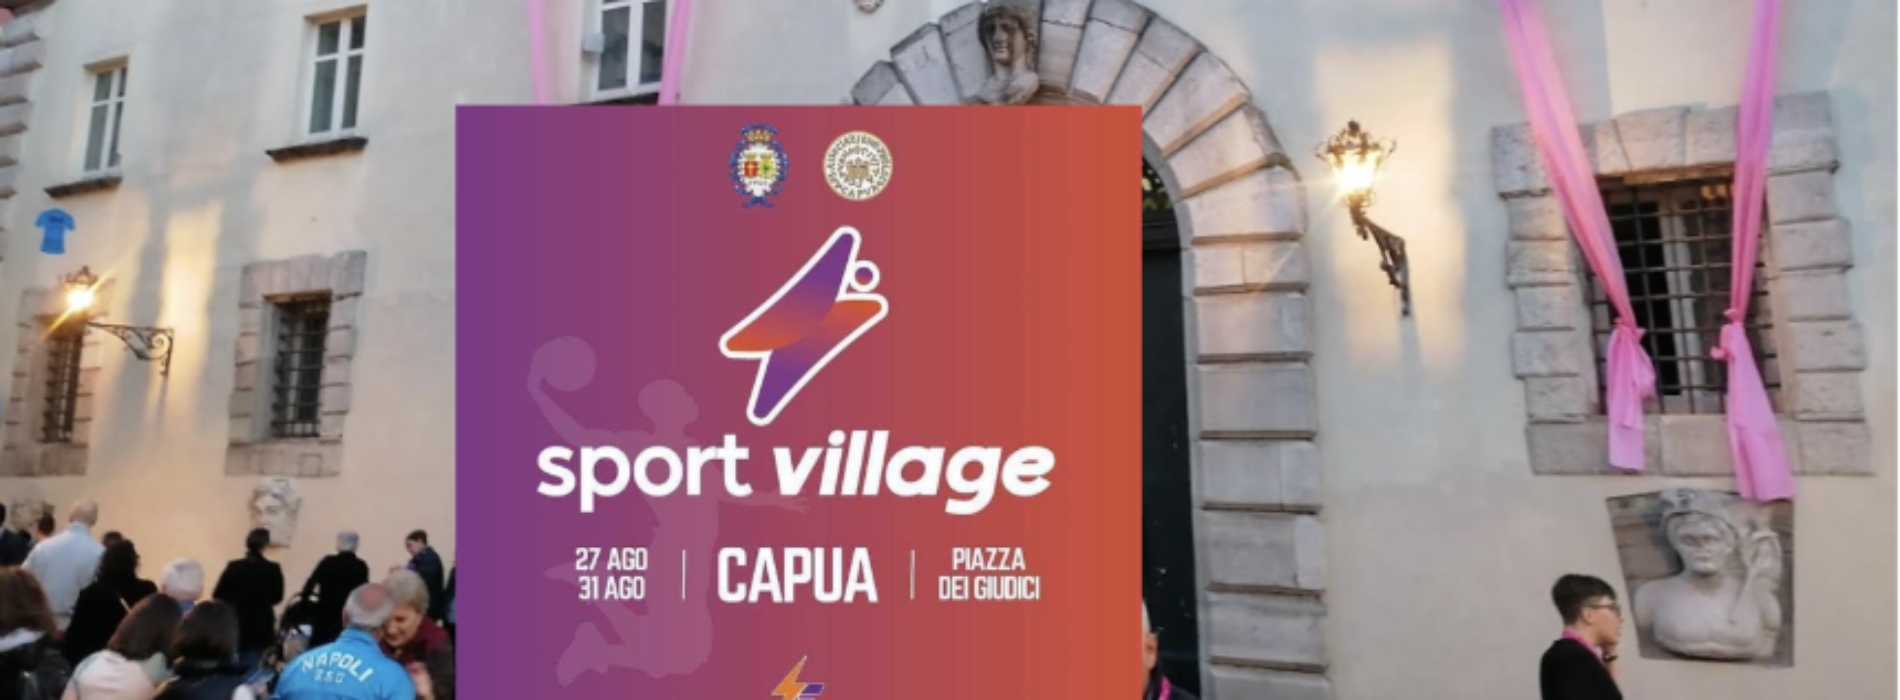 Capua. Un villaggio dello Sport in piazza dei Giudici